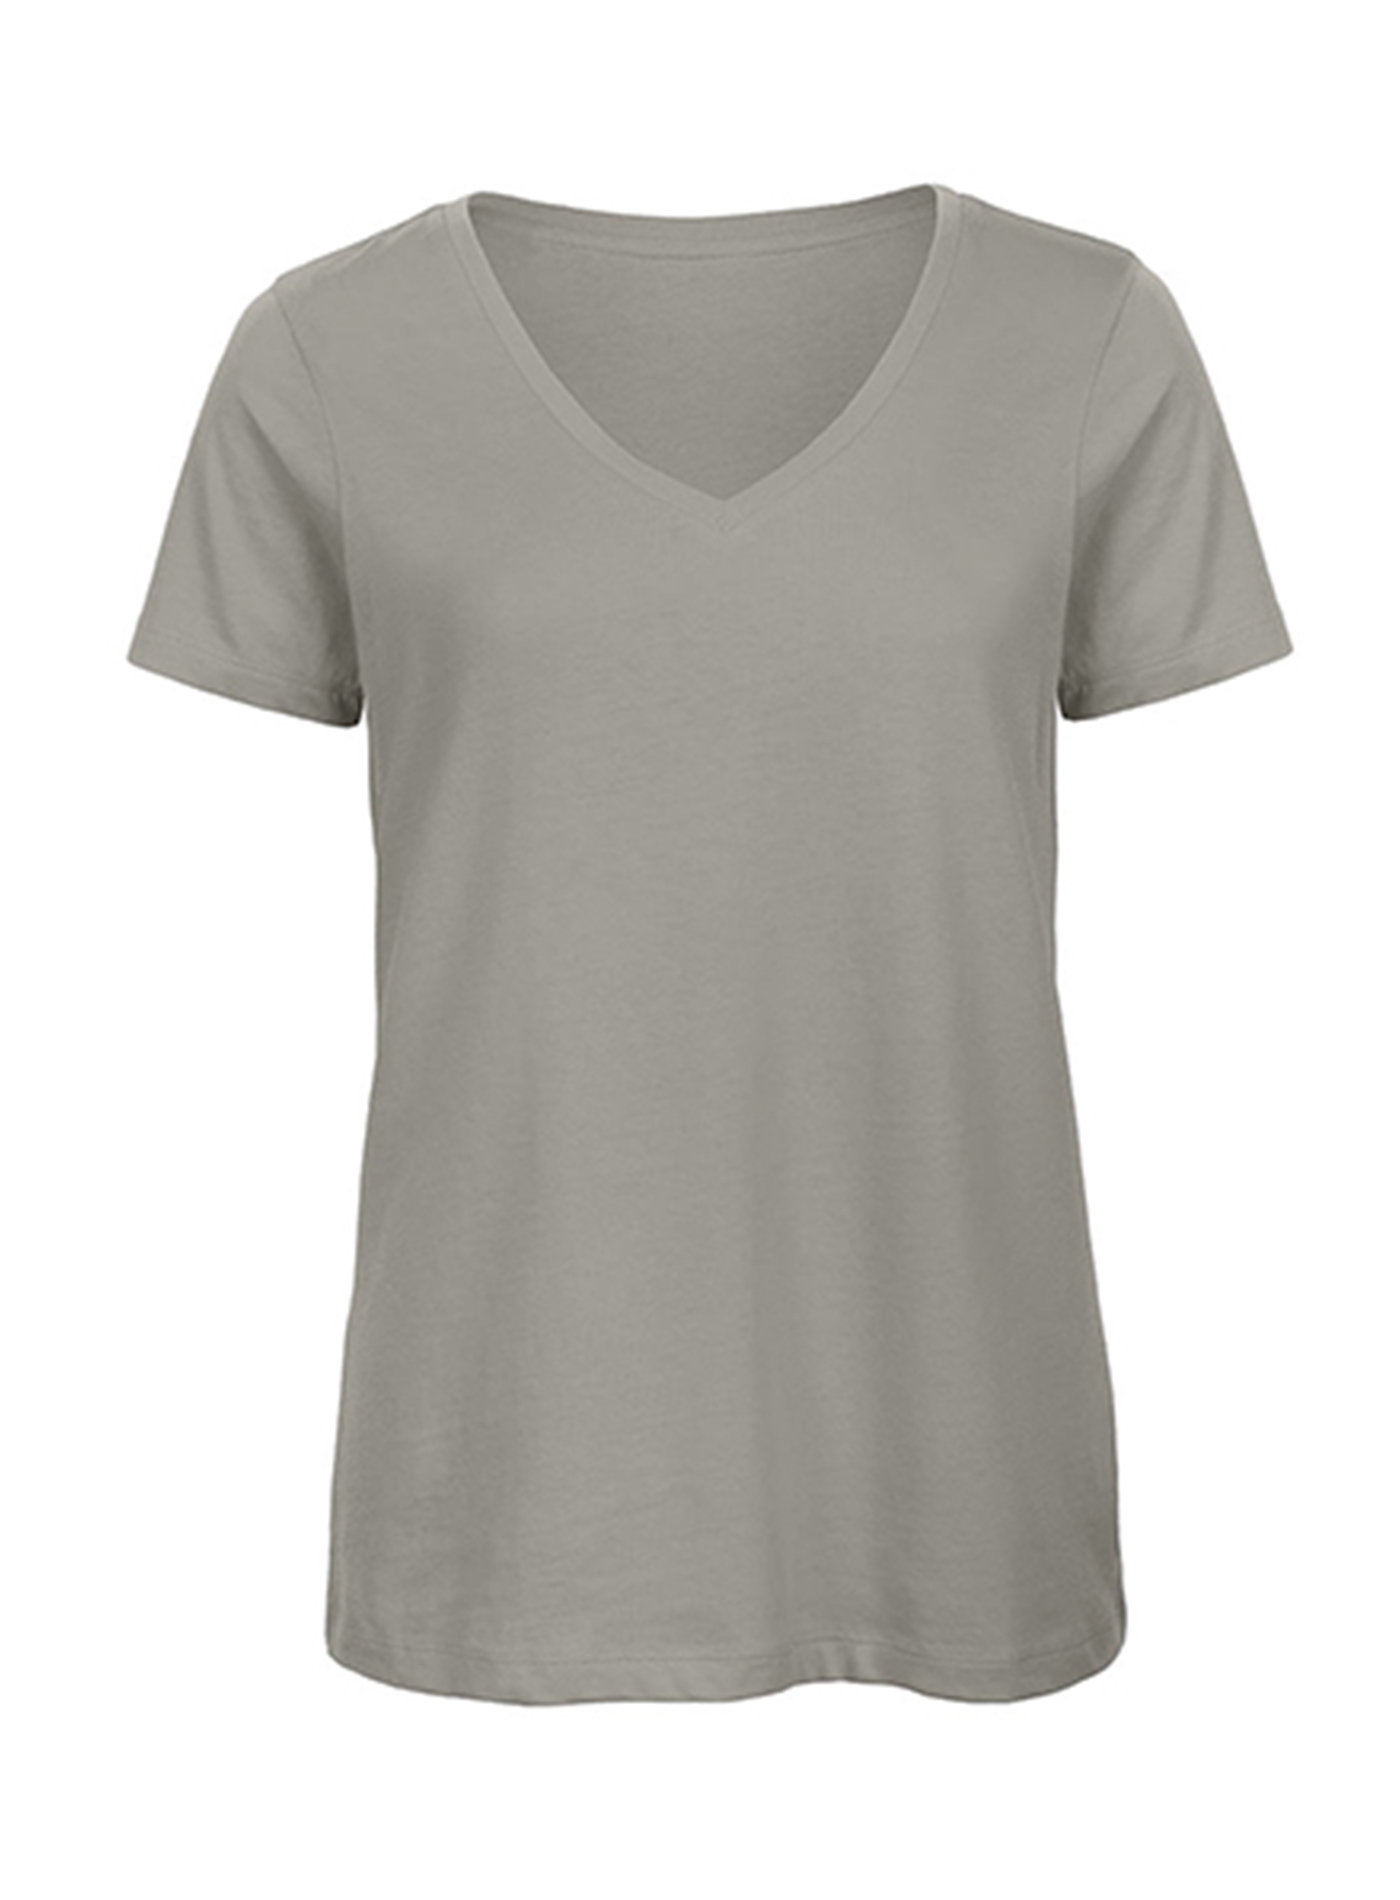 Dámské tričko s výstřihem do V B&C Collection Inspire - Světle šedý melír M